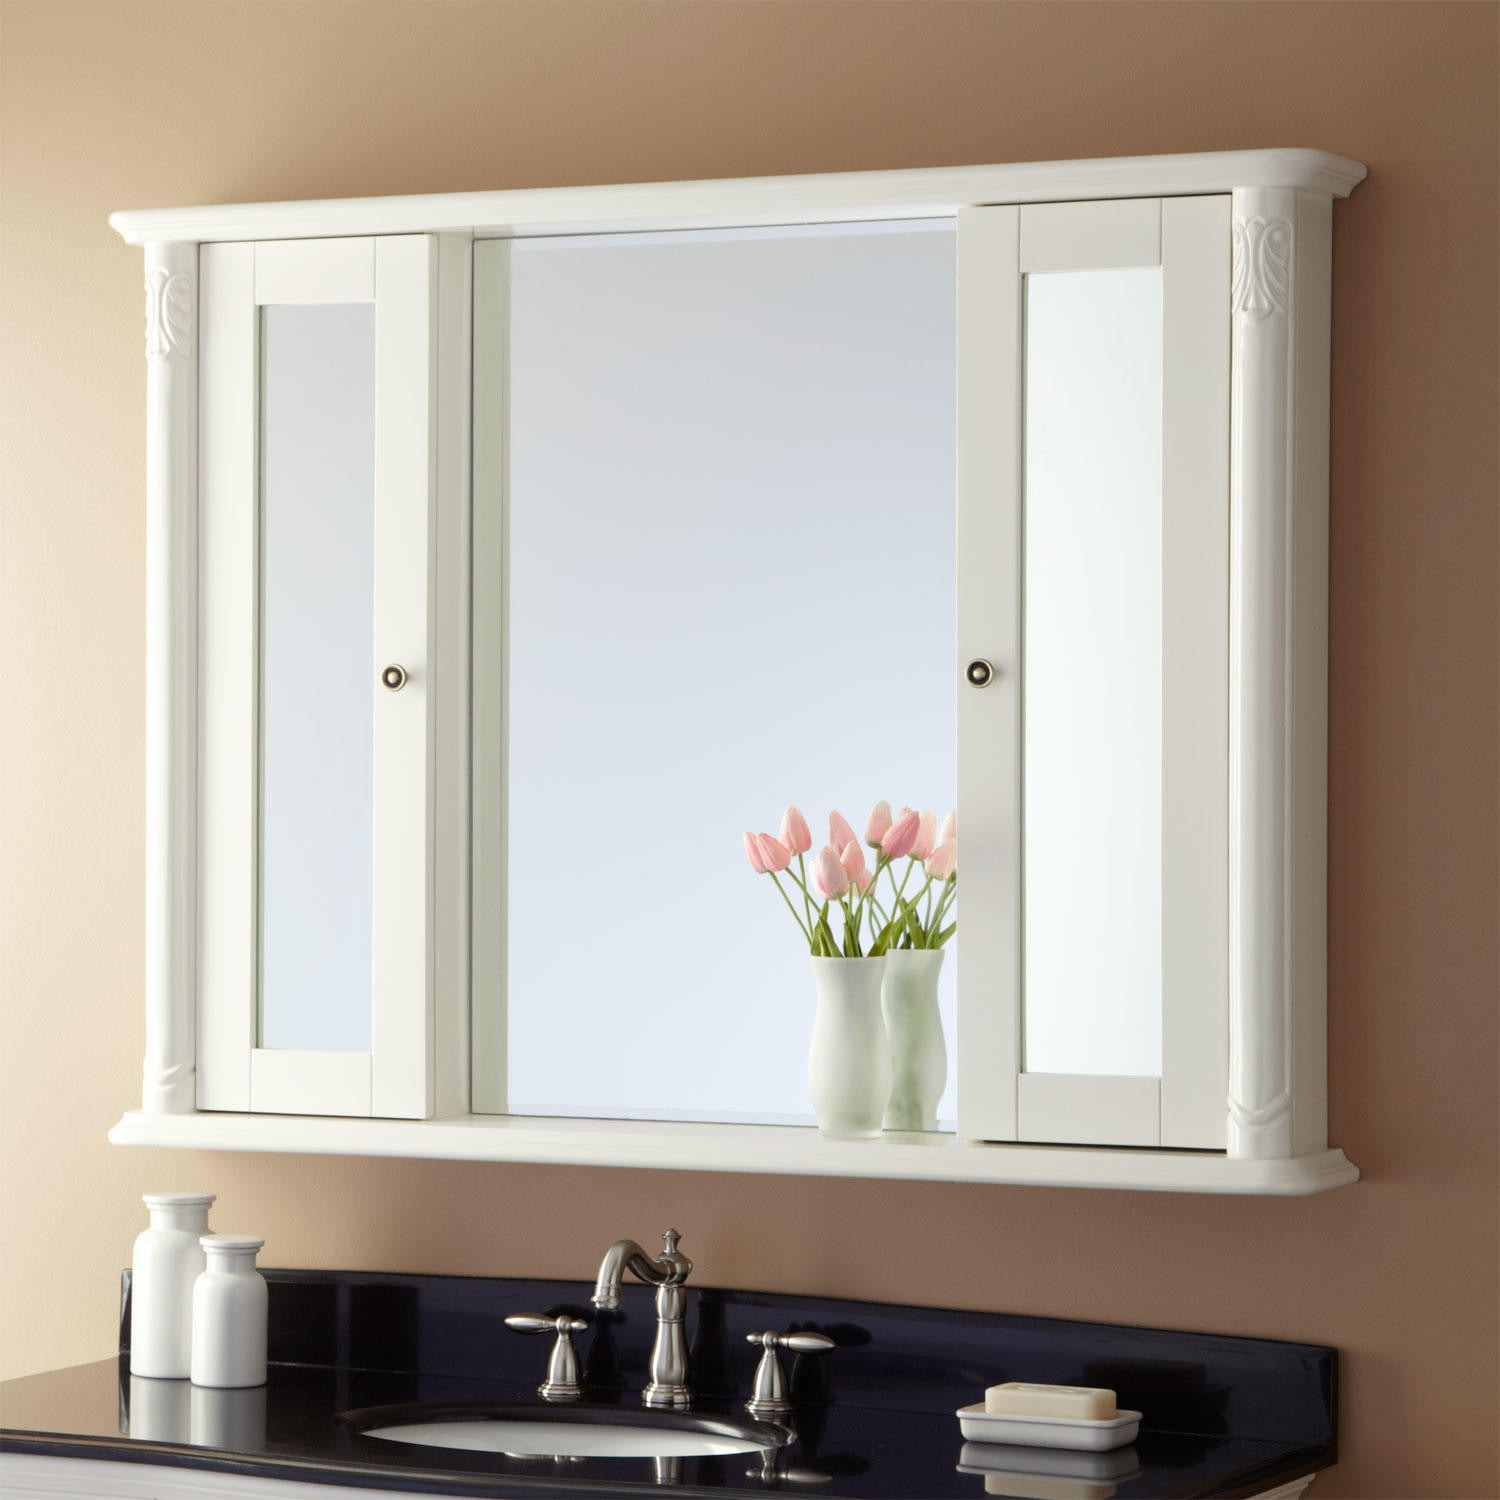 Mirror Cabinet For Bathroom
 48" Sedwick Medicine Cabinet Bathroom